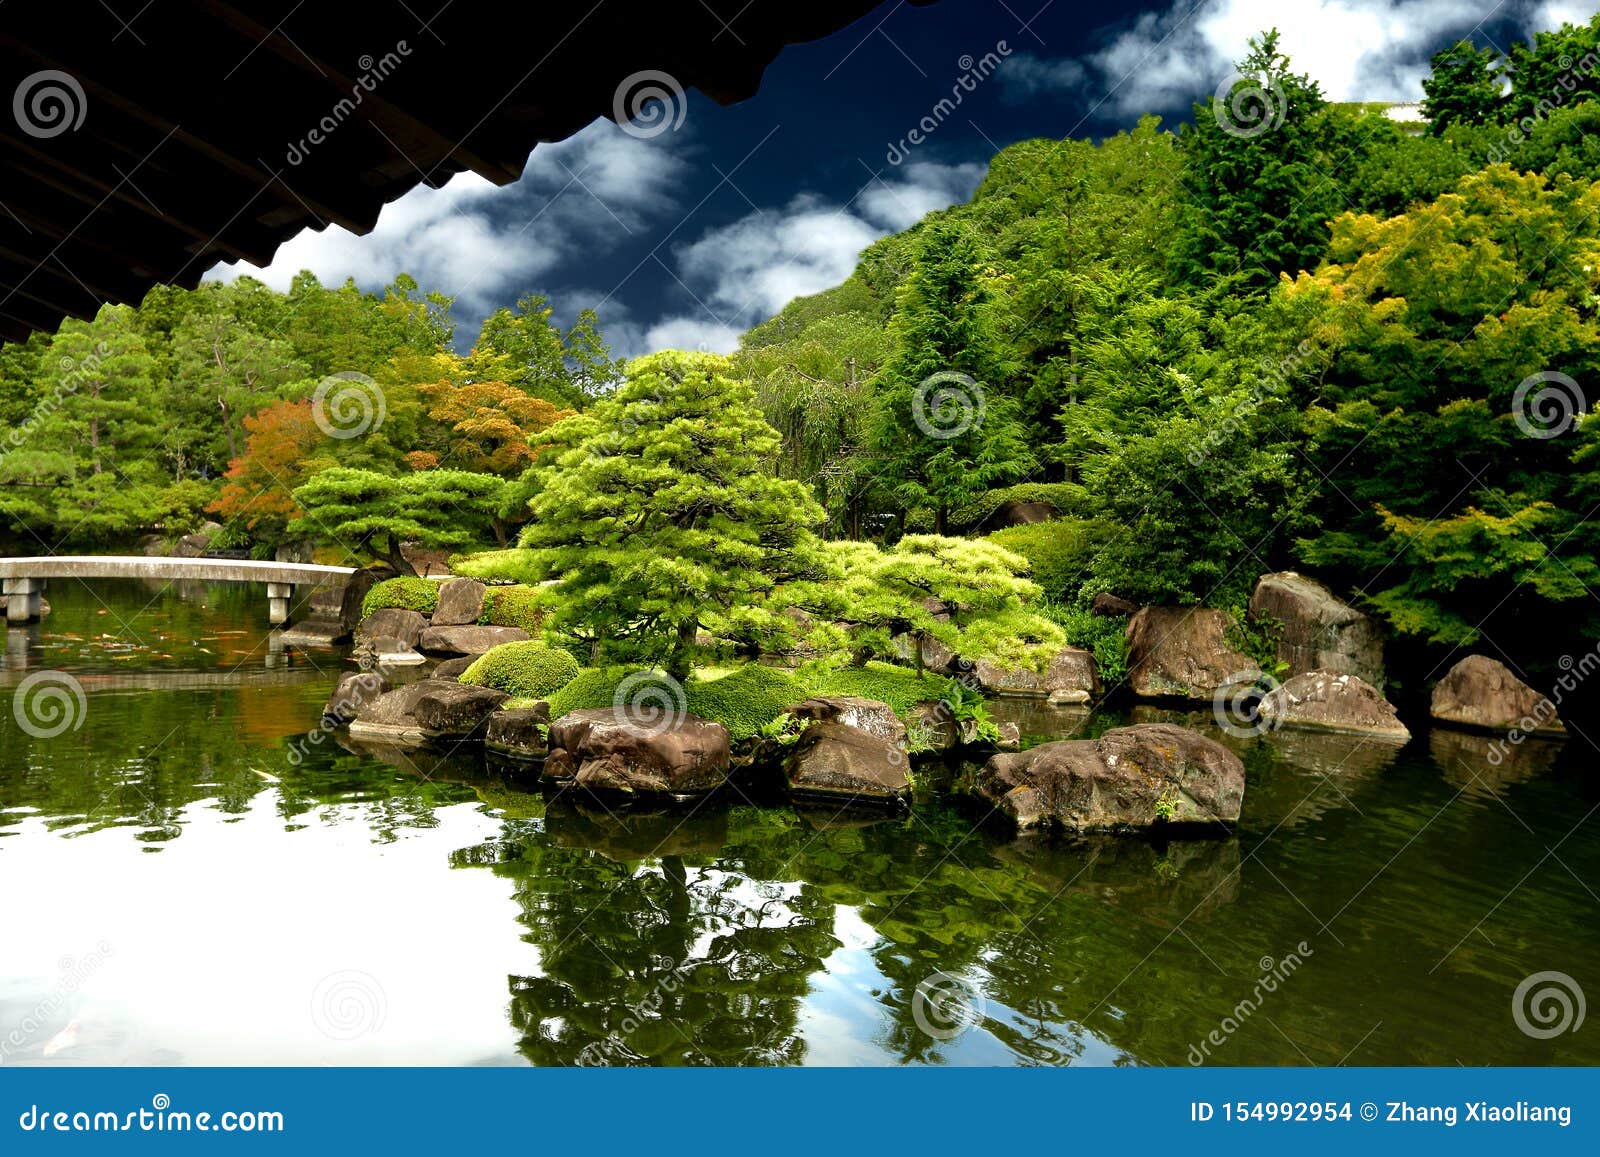 japanese garden - nihon teien